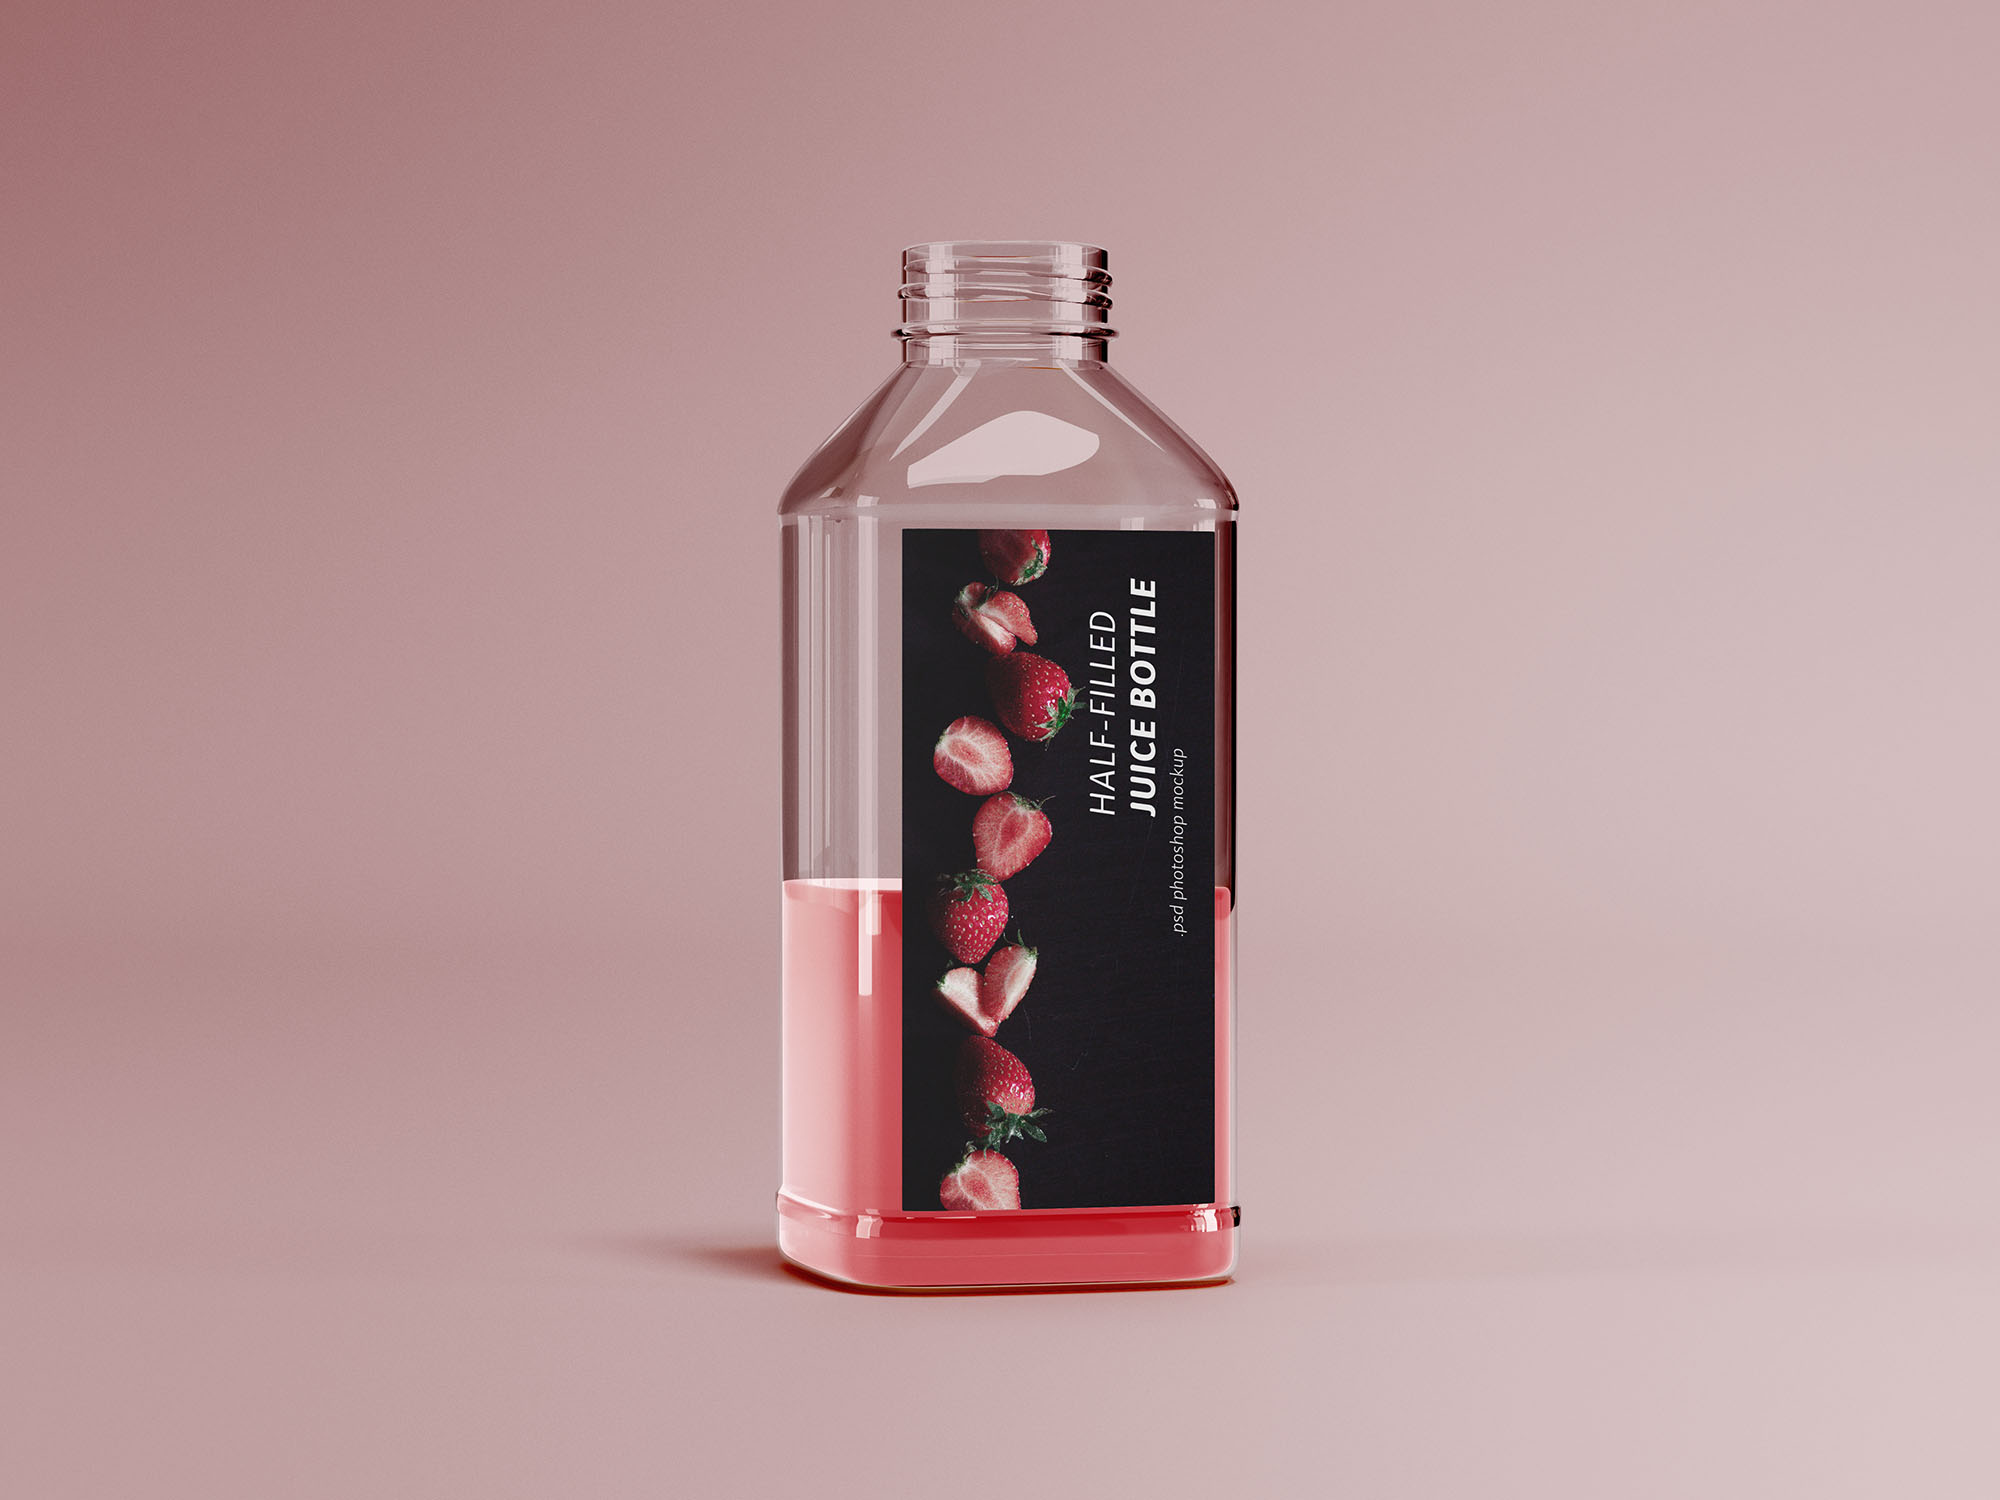 半罐透明塑料果汁瓶外观设计展示素材库精选 Half-filled Juice Bottle Mockup插图(1)